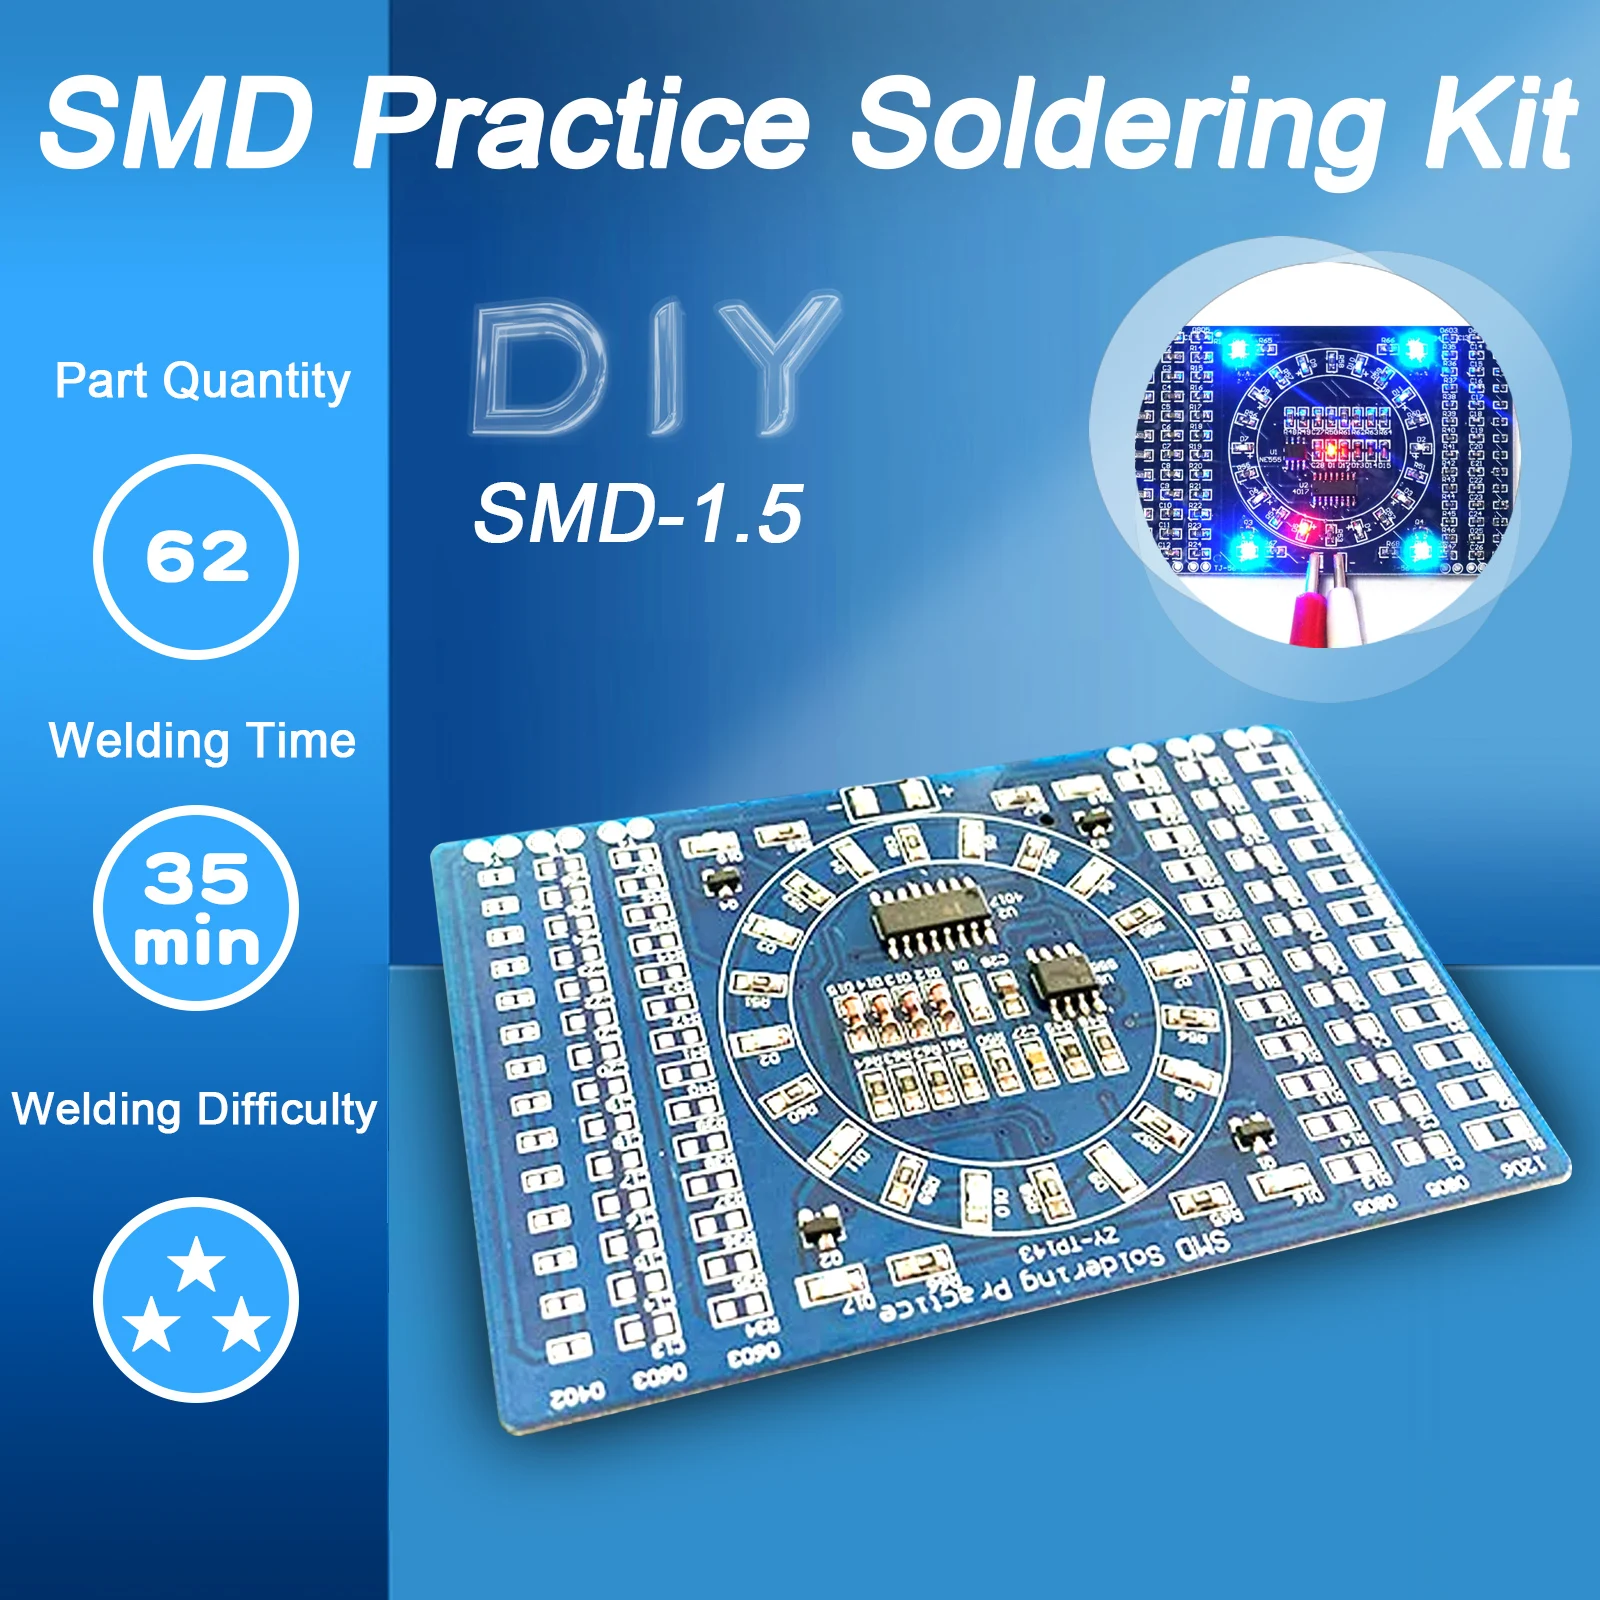 

Приборы для пайки печатных плат стандарта SMD, детали для электроники SMT, инструменты для самостоятельной сборки, базовая деталь